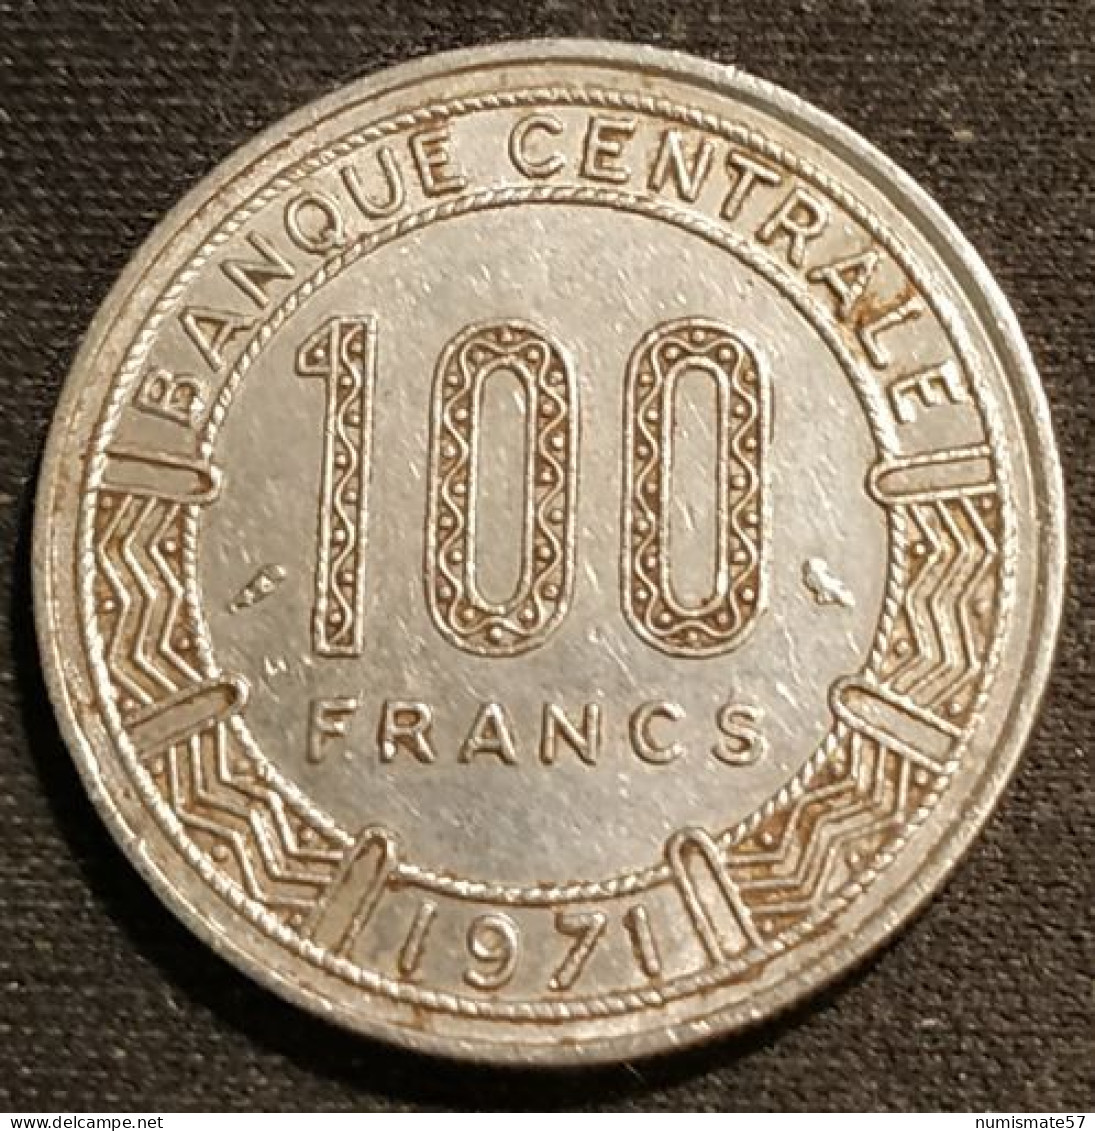 CAMEROUN - 100 FRANCS 1971 - KM 15 - Camerún